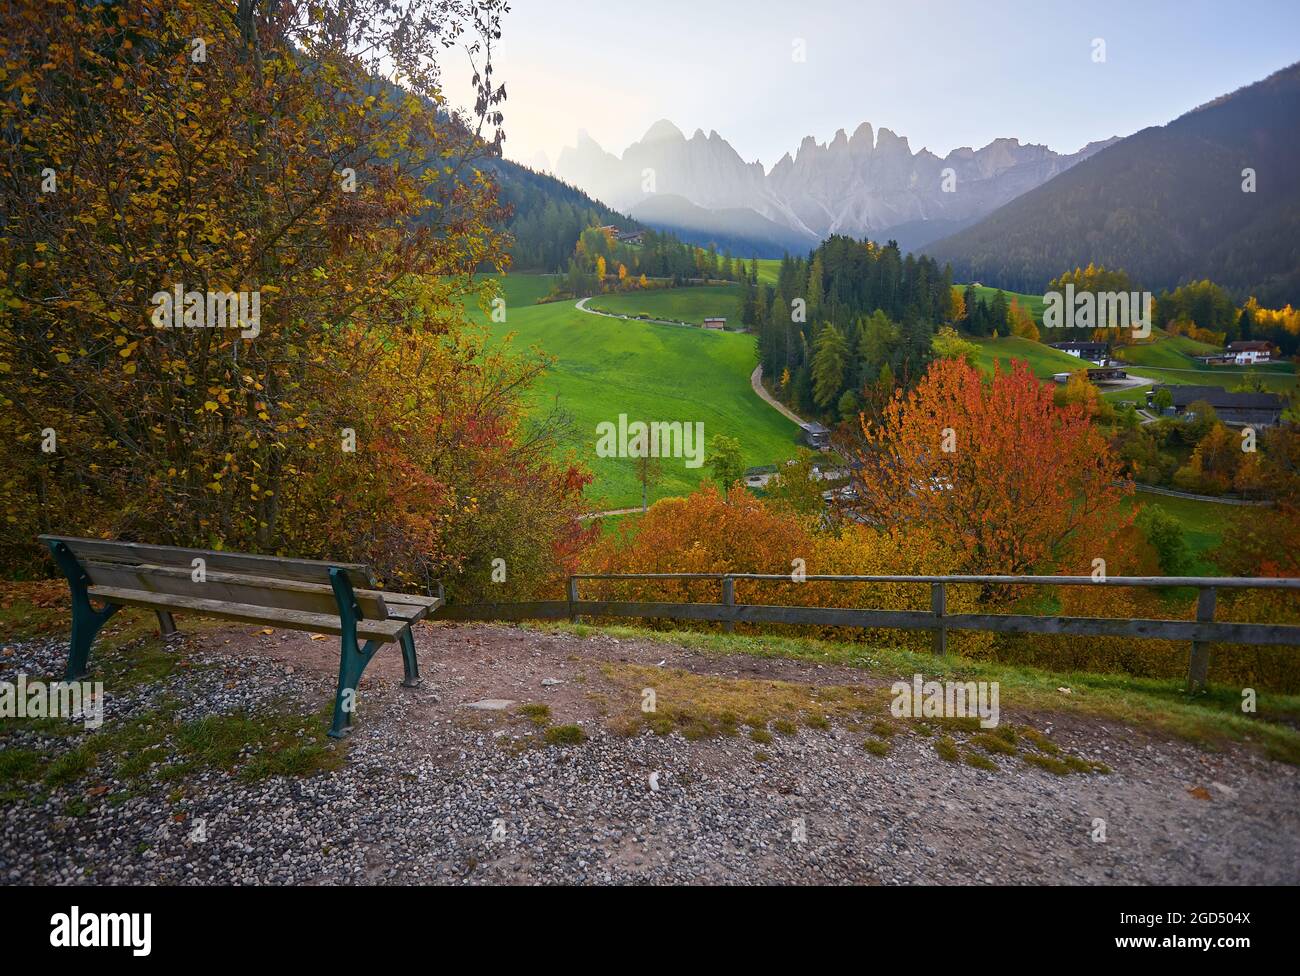 Panchina con vista sul villaggio di Santa Maddalena (St Magdalena) con le montagne dolomitiche sullo sfondo, Val di Funes, Trentino Alto Adige, Ita Foto Stock